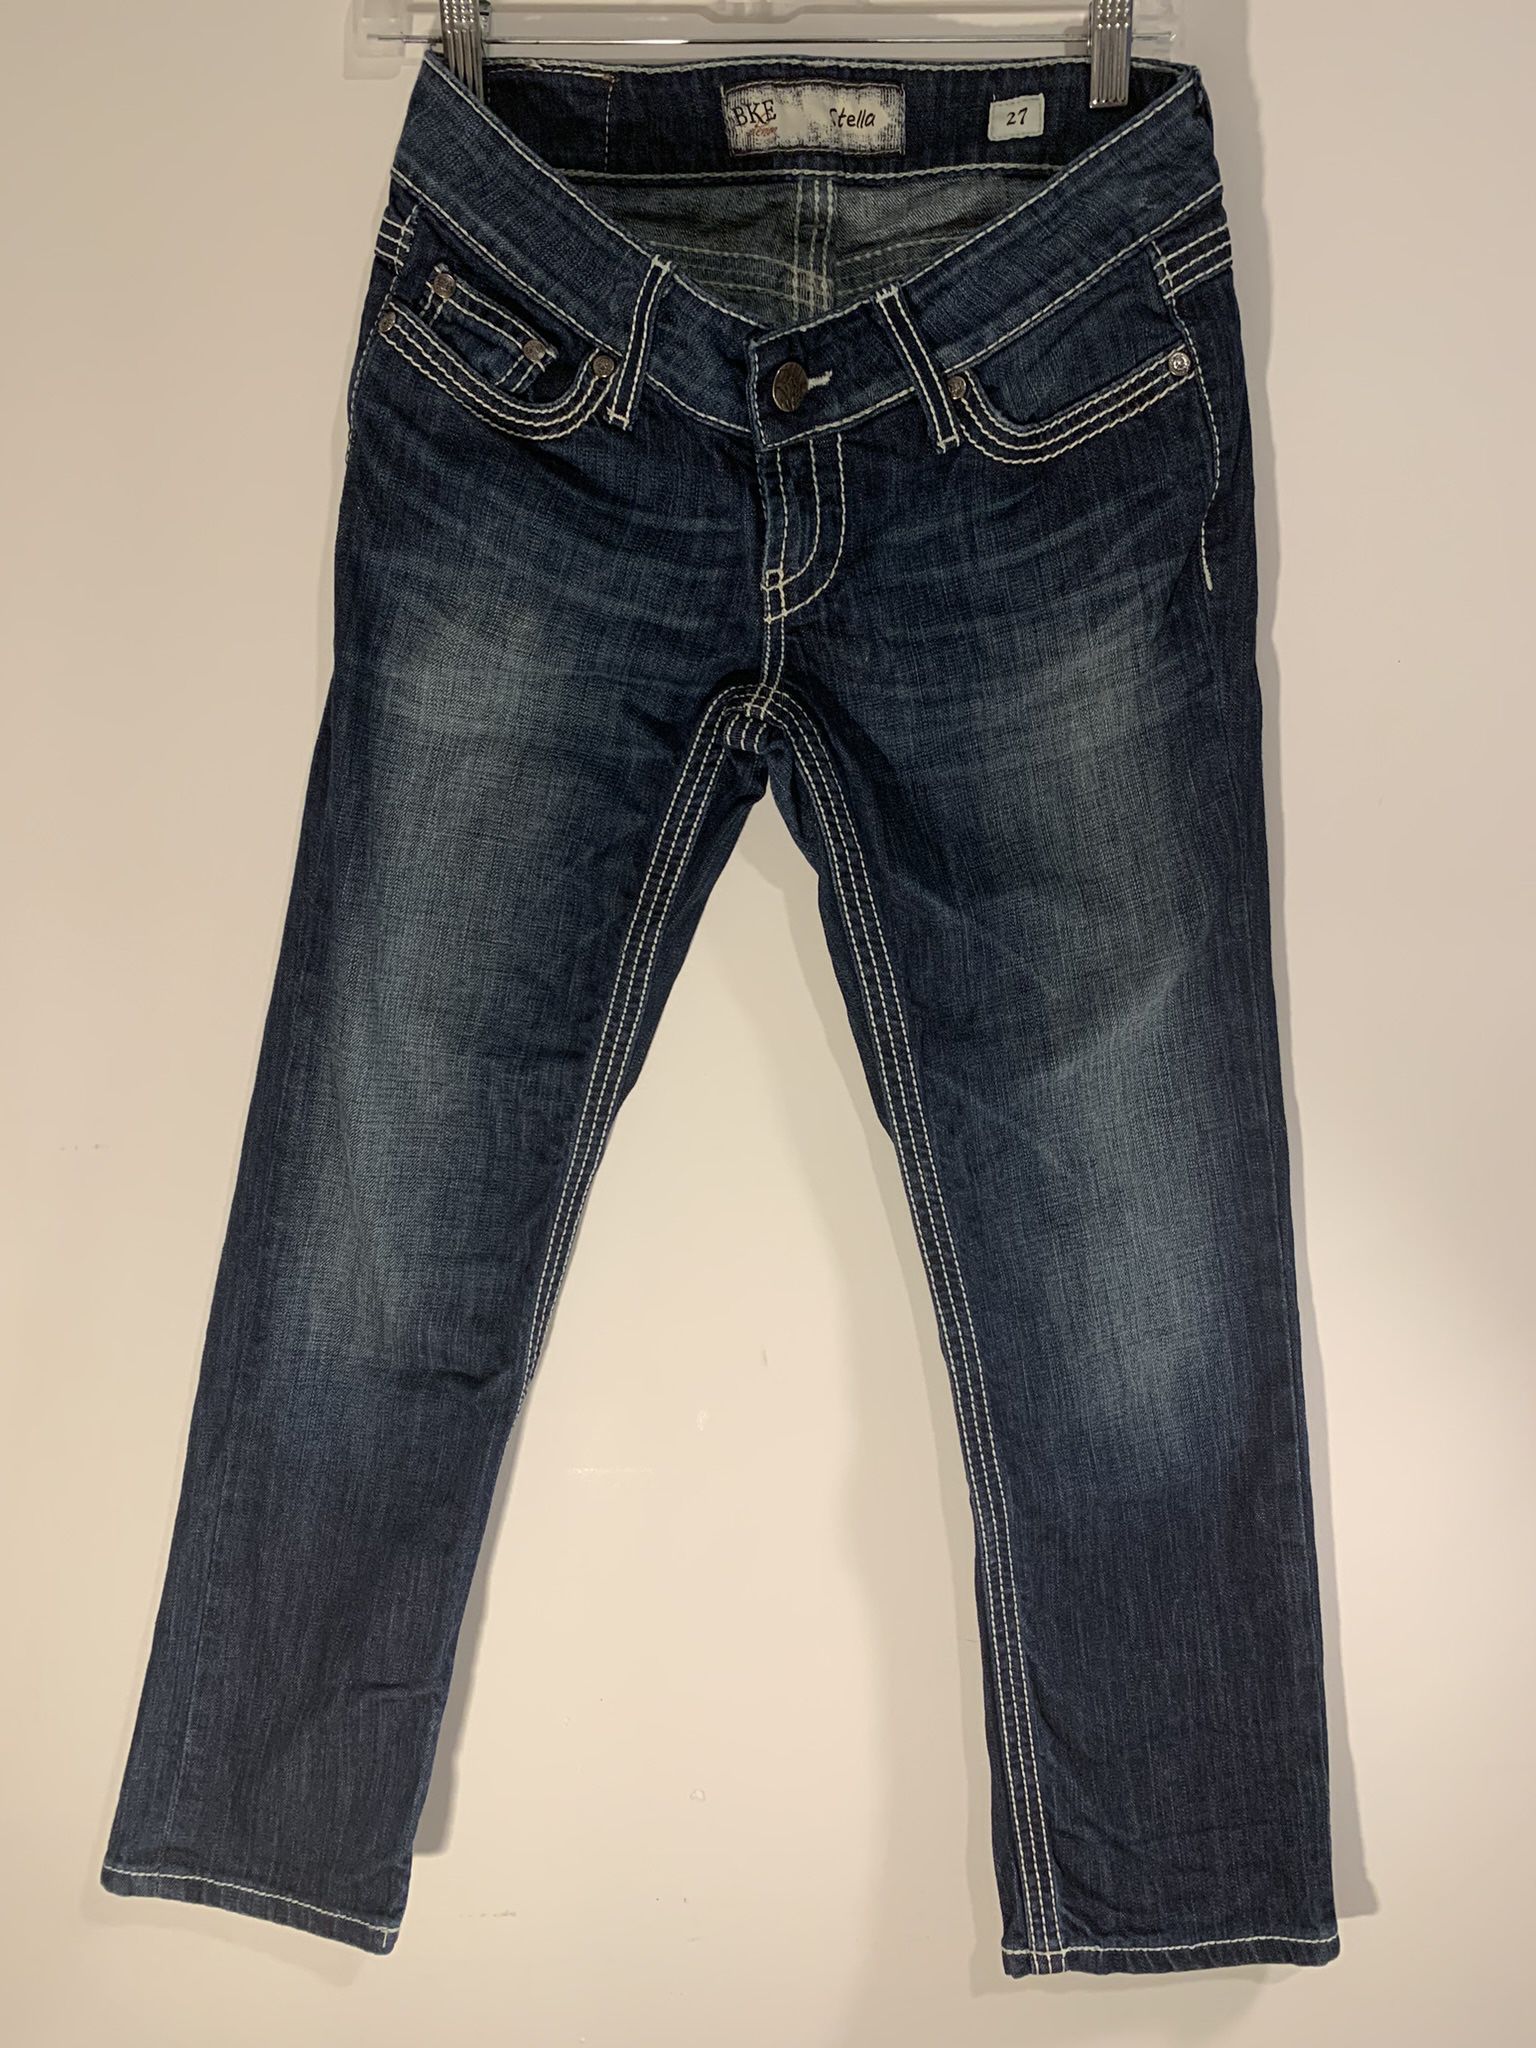 Woman’s BKE Capri Skinny Jeans 27 Waist X 24” Inseem